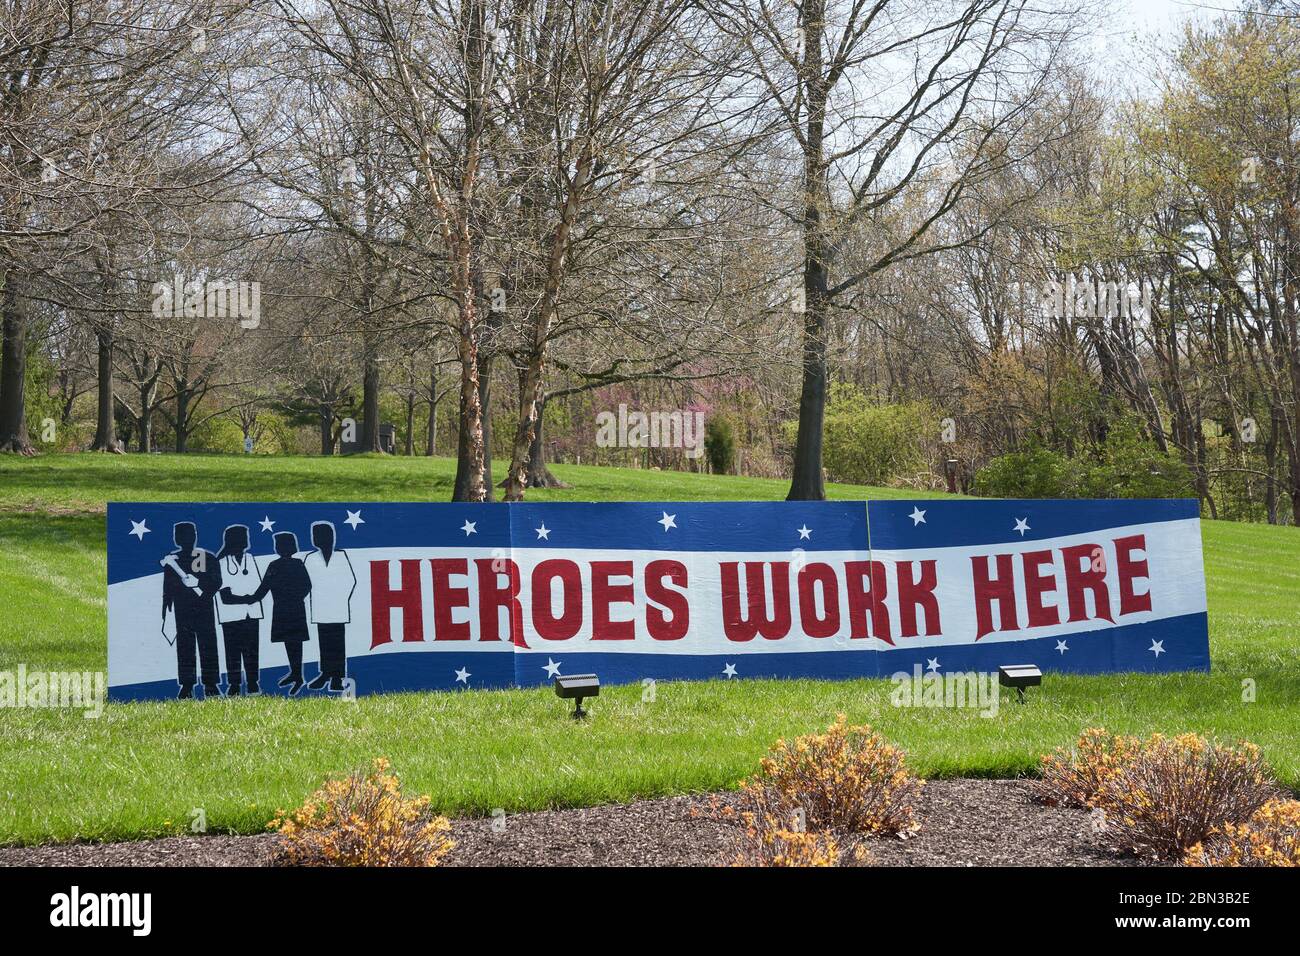 Worcester, PA - 19 avril 2020 : le panneau rouge, blanc et bleu « les héros travaillent ici » se trouve en face de la communauté de personnes âgées de Meadowood. Cela fait référence à t Banque D'Images